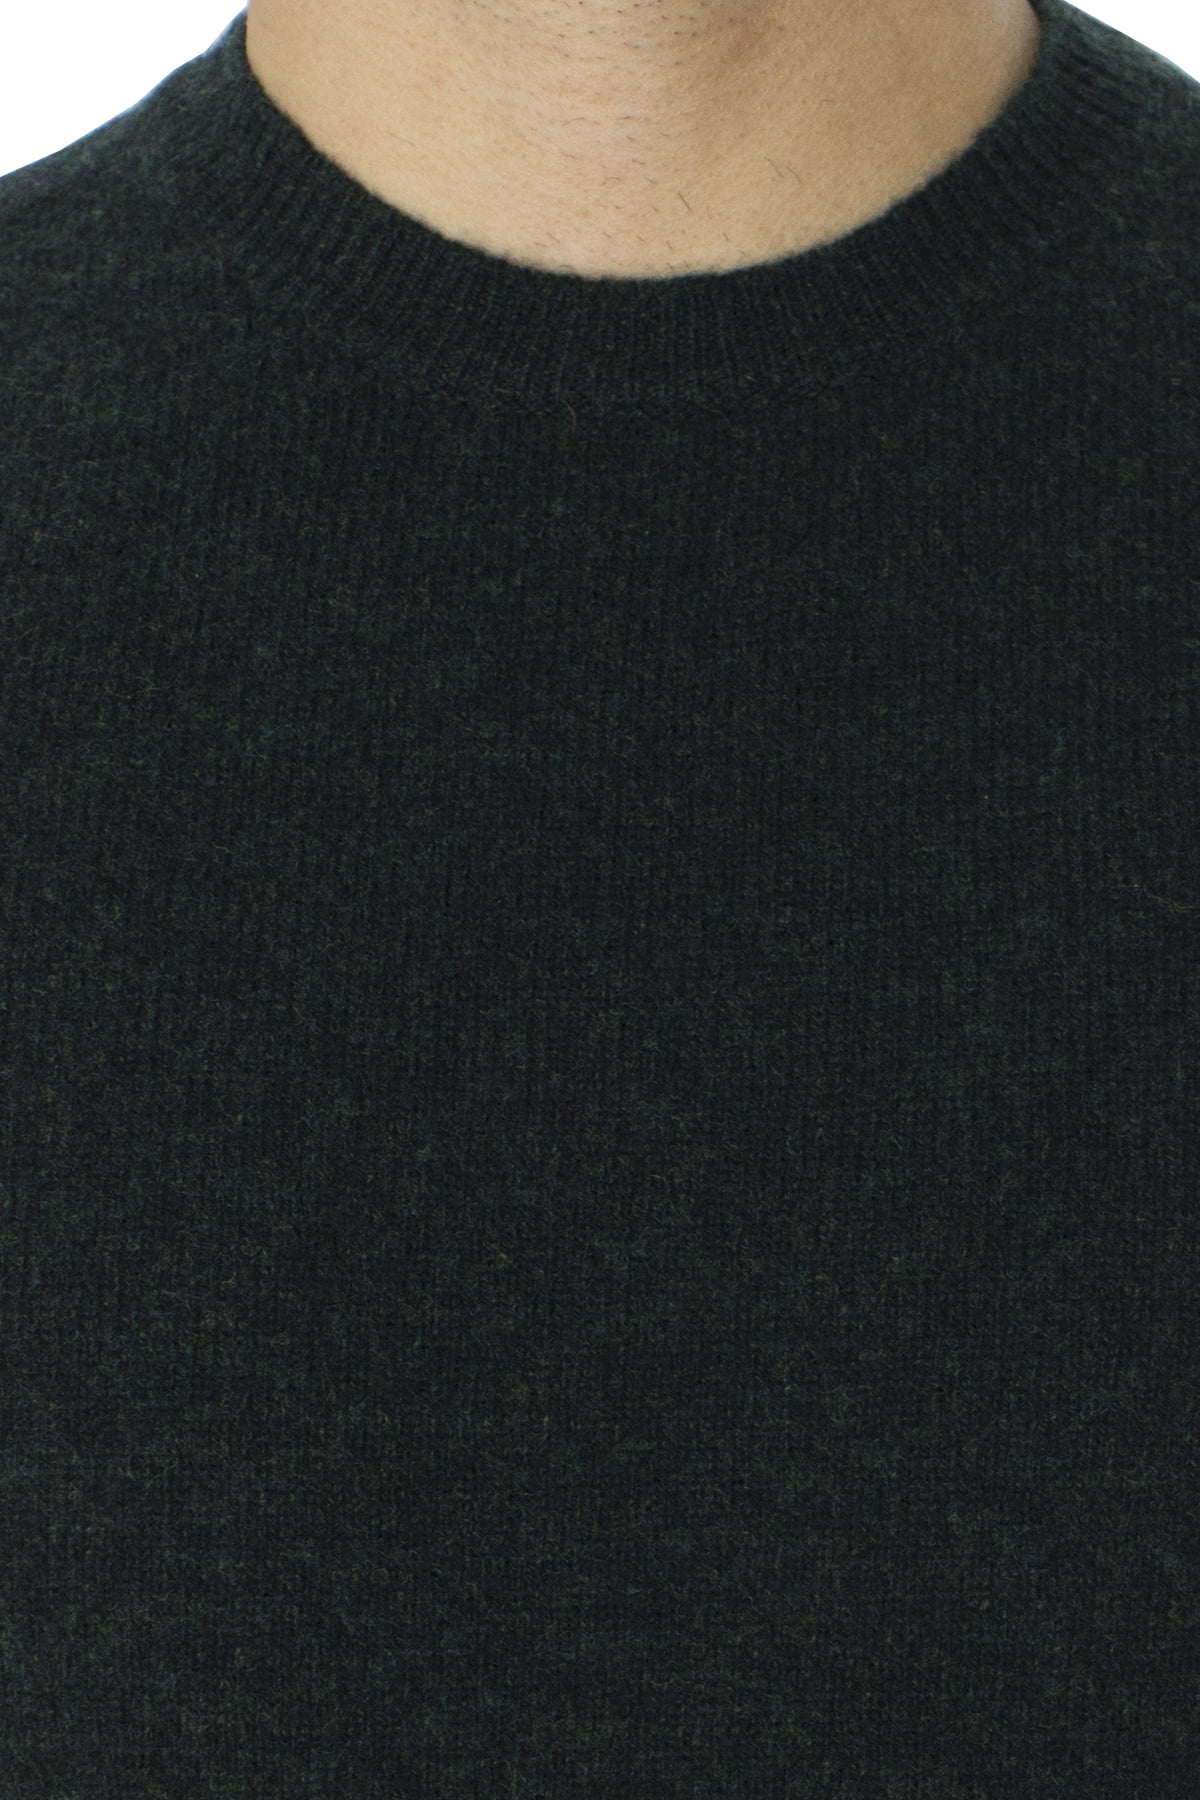 Maglione uomo Girocollo verde scuro effetto melange verde chiaro in lana 100% slim fit